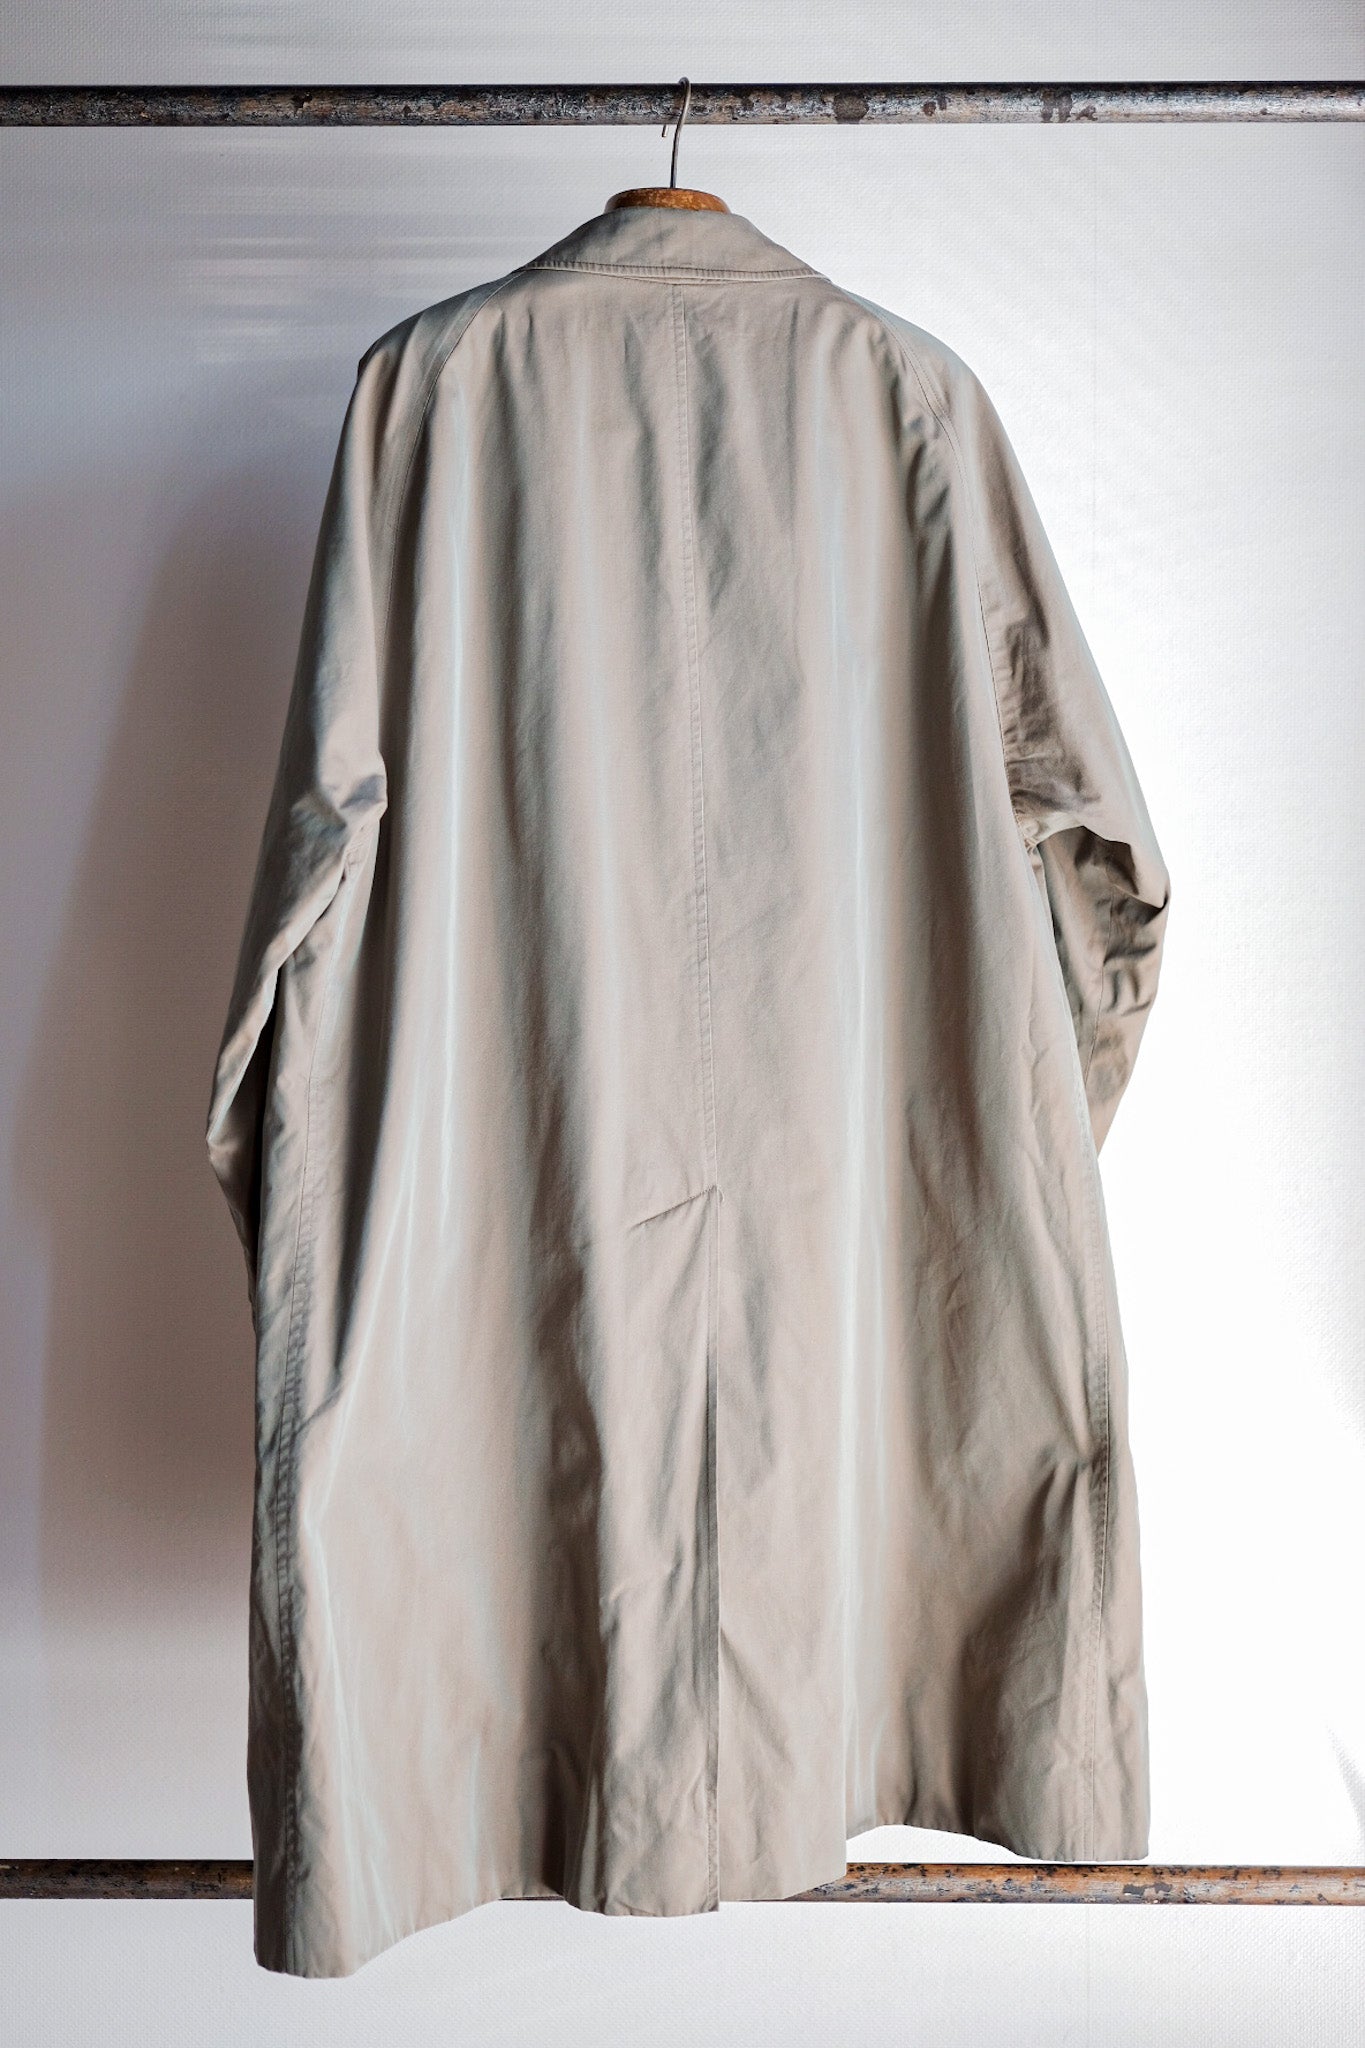 [〜80年代]復古Burberry的單一raglan balmacaan外套C100尺寸。